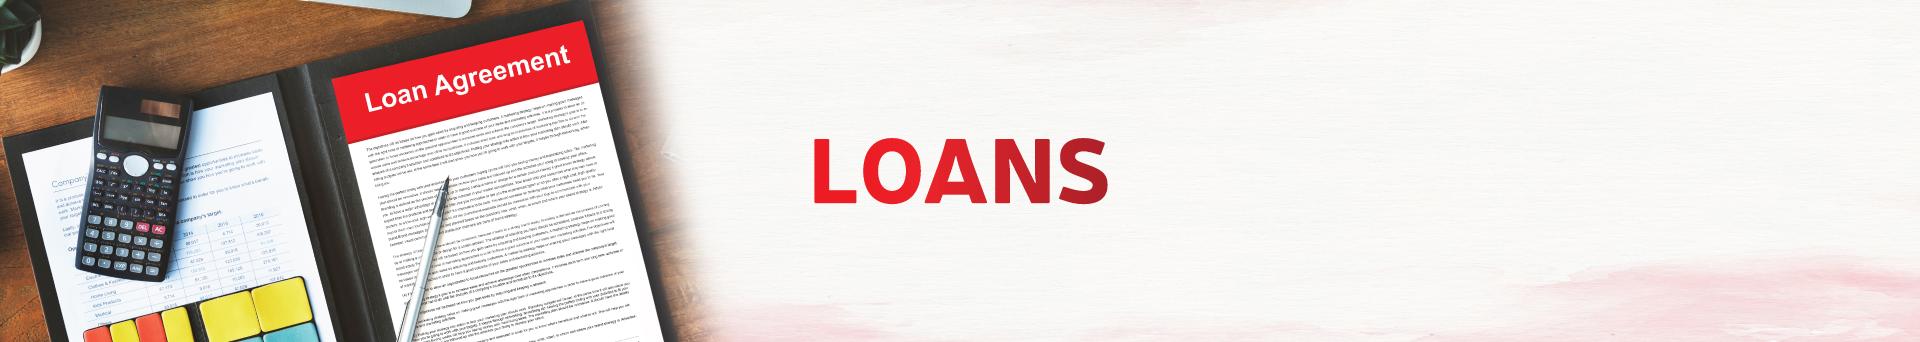 Project loans 